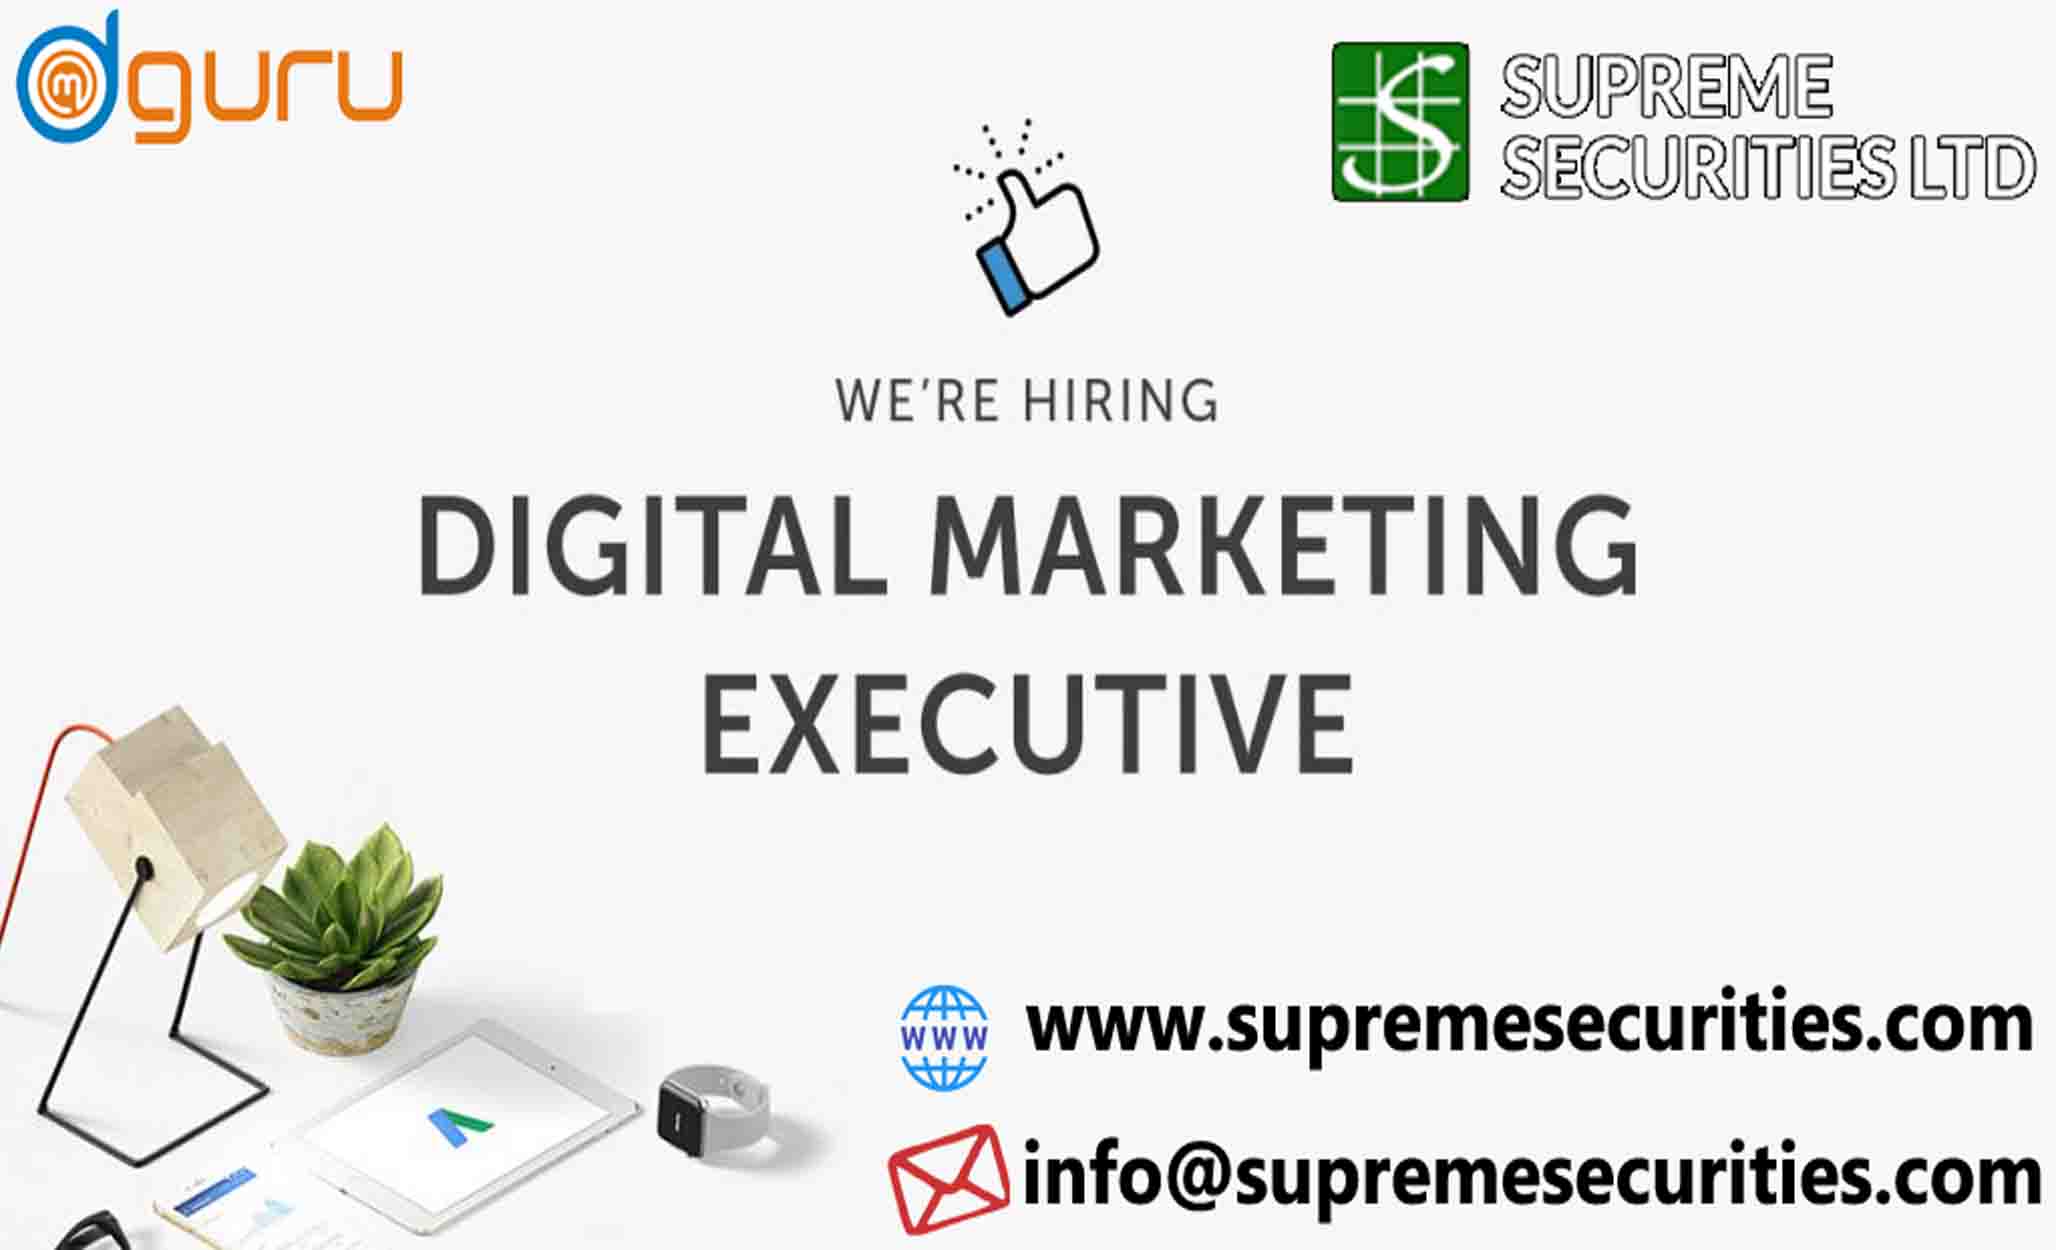 Digital Marketer Job at Supreme Securities LTD Delhi, India